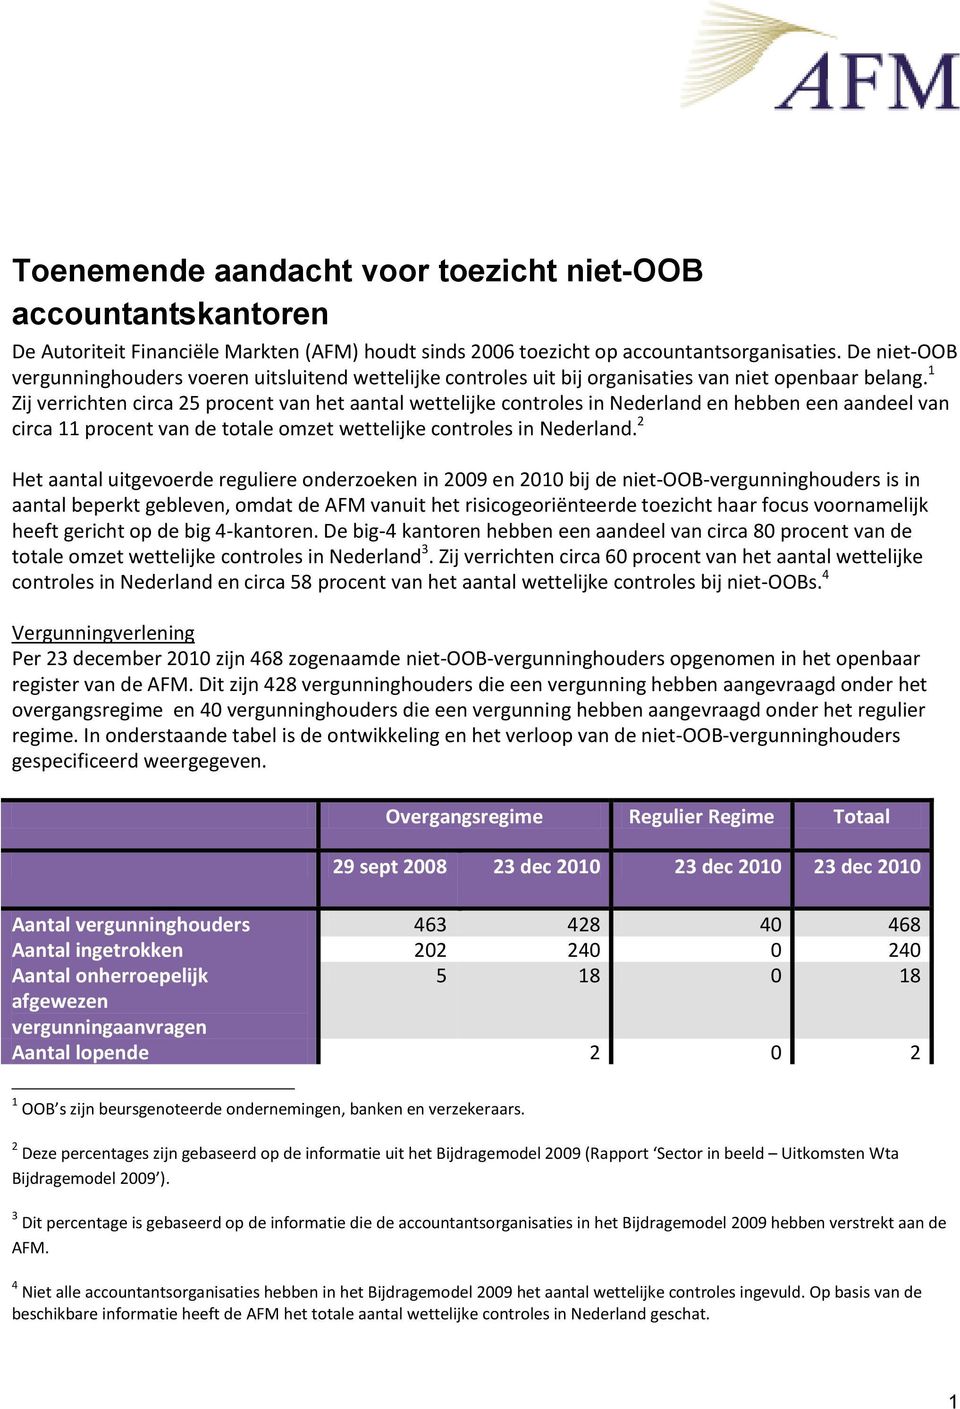 1 Zij verrichten circa 25 procent van het aantal wettelijke controles in Nederland en hebben een aandeel van circa 11 procent van de totale omzet wettelijke controles in Nederland.